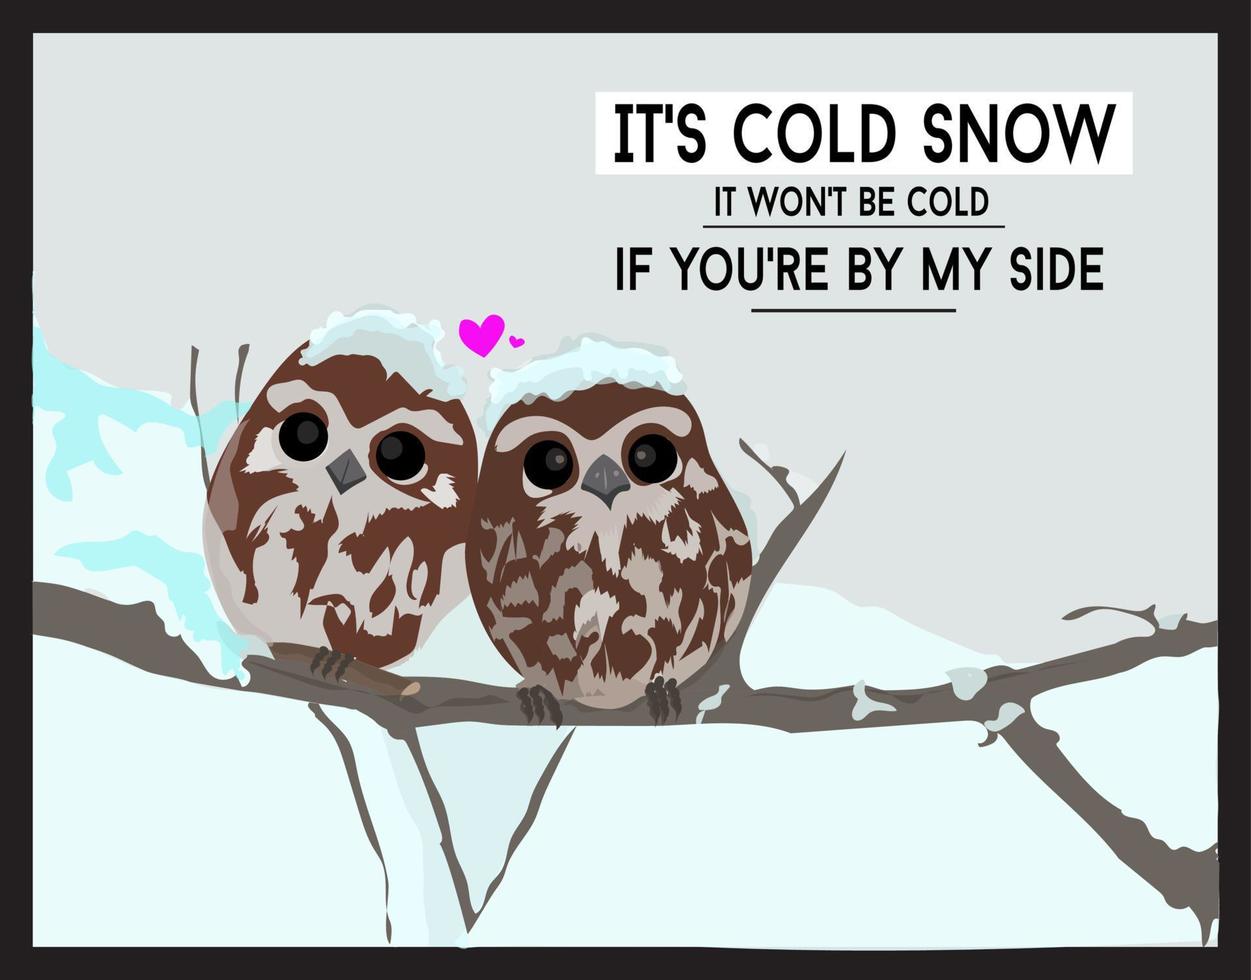 illustrationer och vektorer, en par av ugglor och citat handla om snö och vinter- i december, perfekt för sändning till din partner vektor